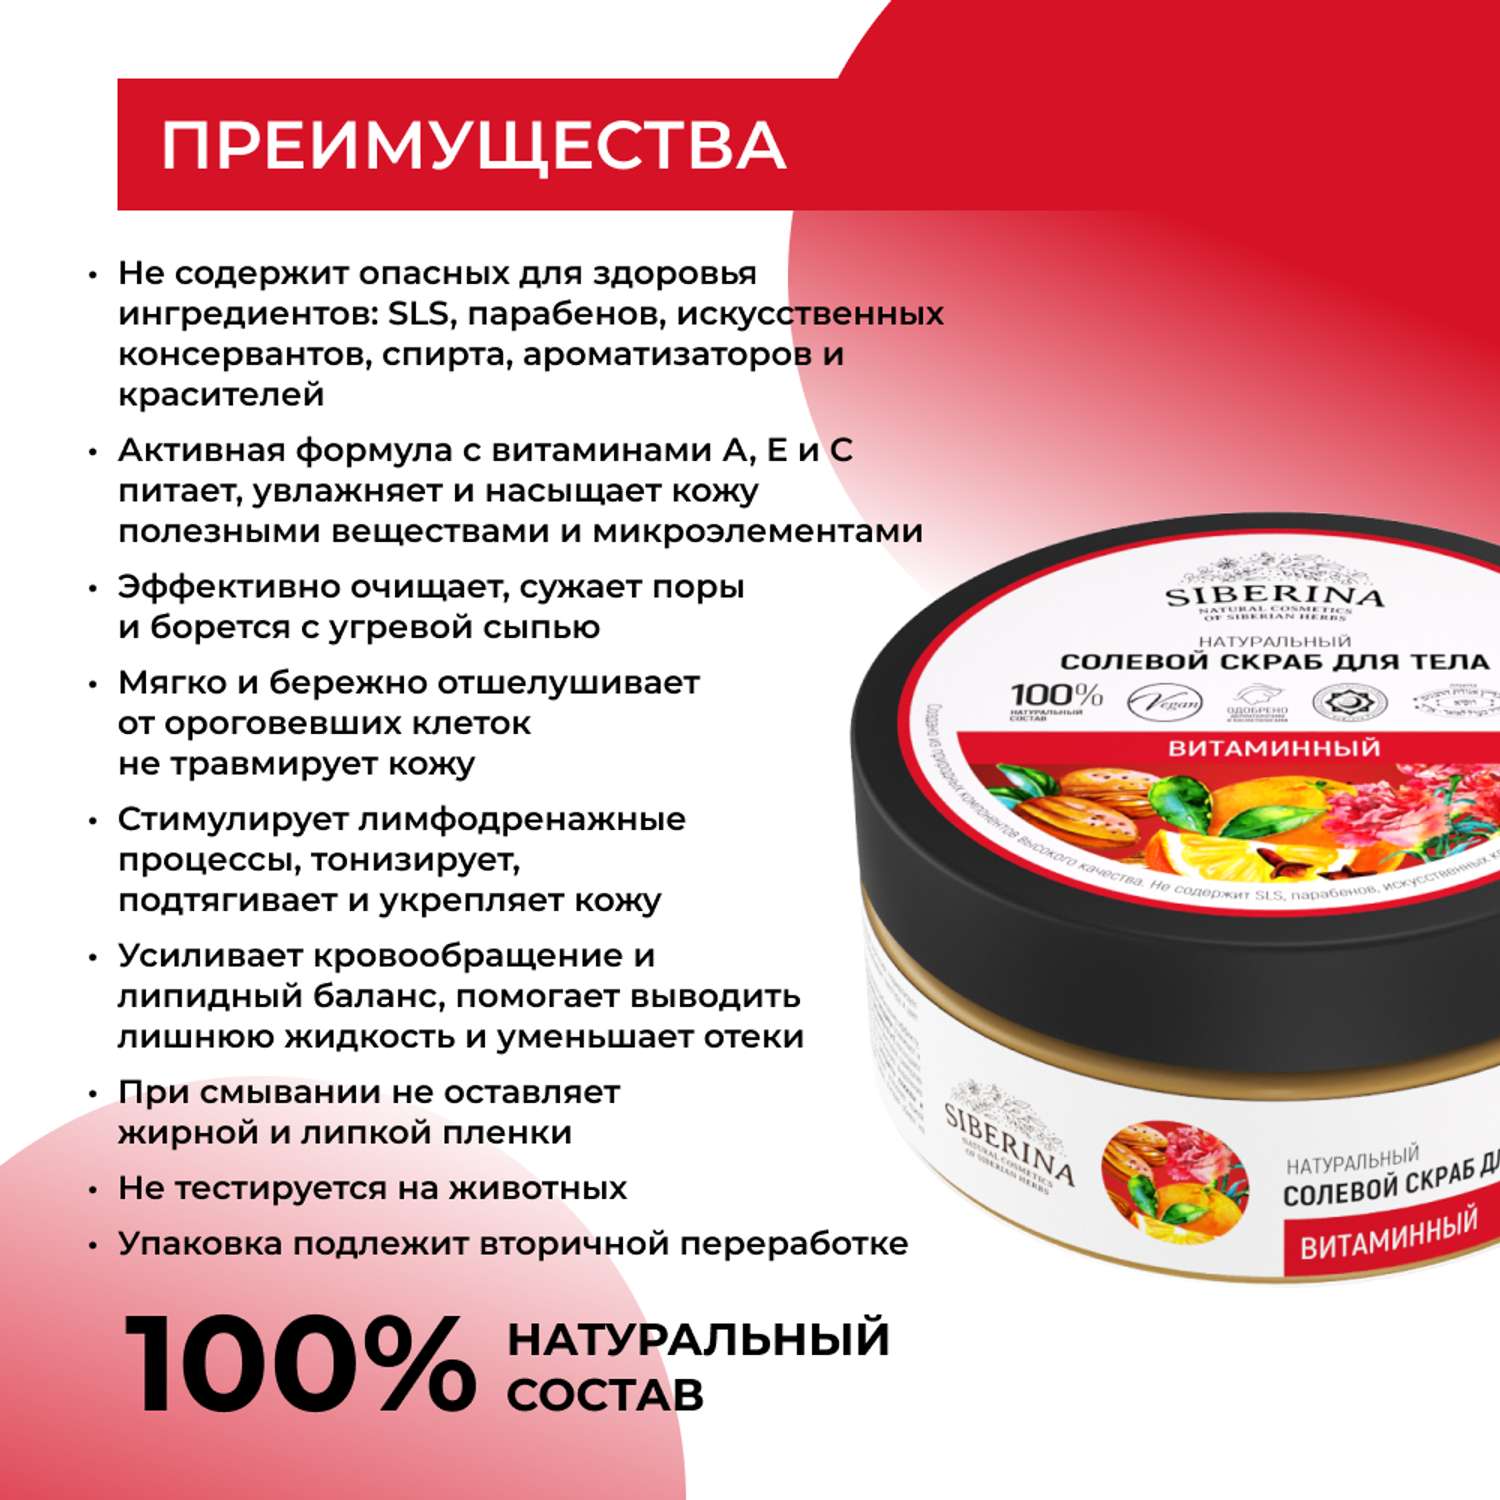 Солевой скраб Siberina натуральный «Витаминный» для тела 170 мл - фото 3